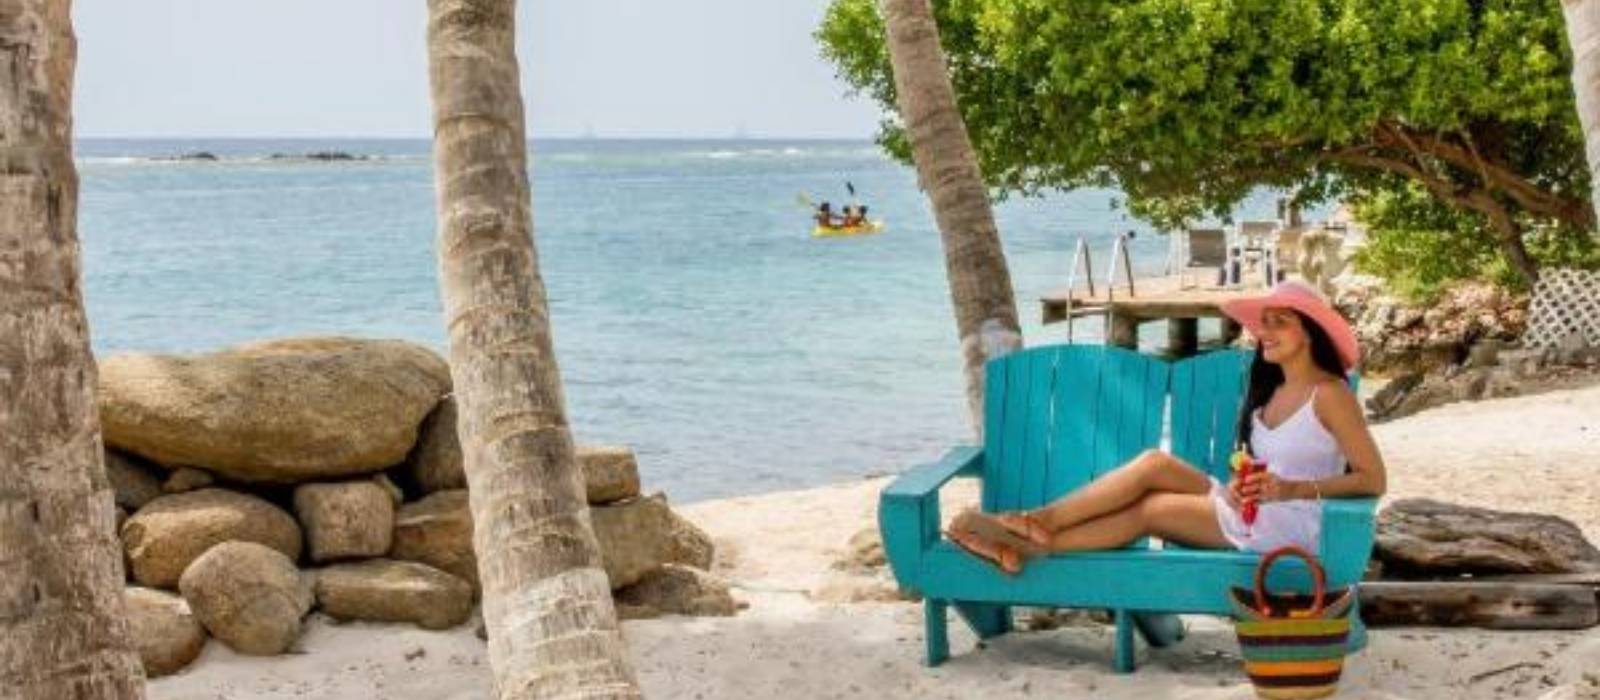 Serene by the Sea - Boutique Hotel Aruba